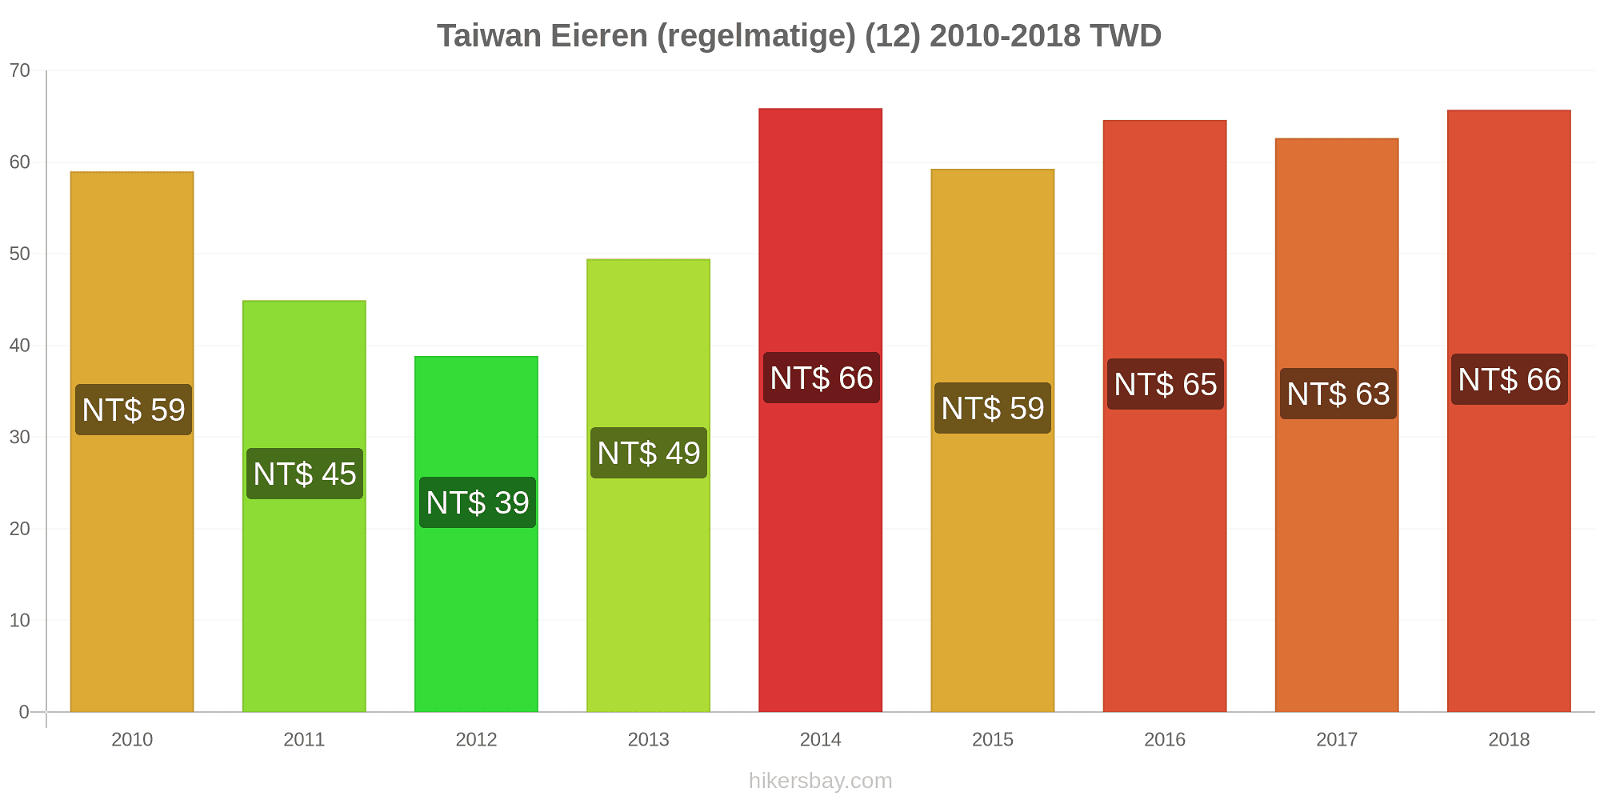 Taiwan prijswijzigingen Eieren (regelmatig) (12) hikersbay.com